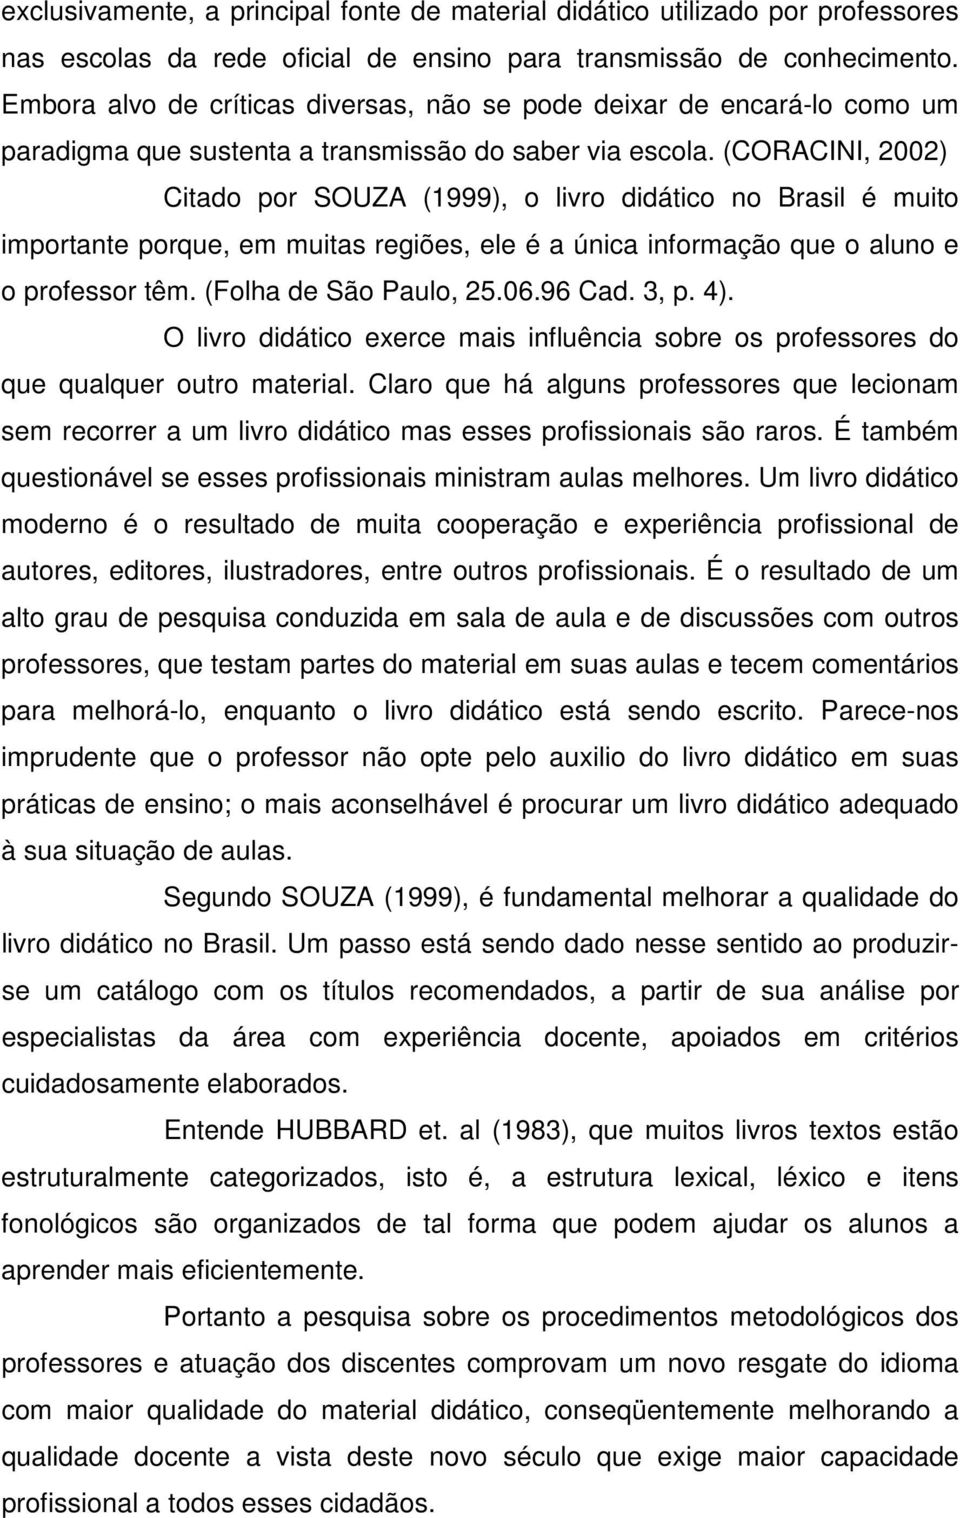 (CORACINI, 2002) Citado por SOUZA (1999), o livro didático no Brasil é muito importante porque, em muitas regiões, ele é a única informação que o aluno e o professor têm. (Folha de São Paulo, 25.06.